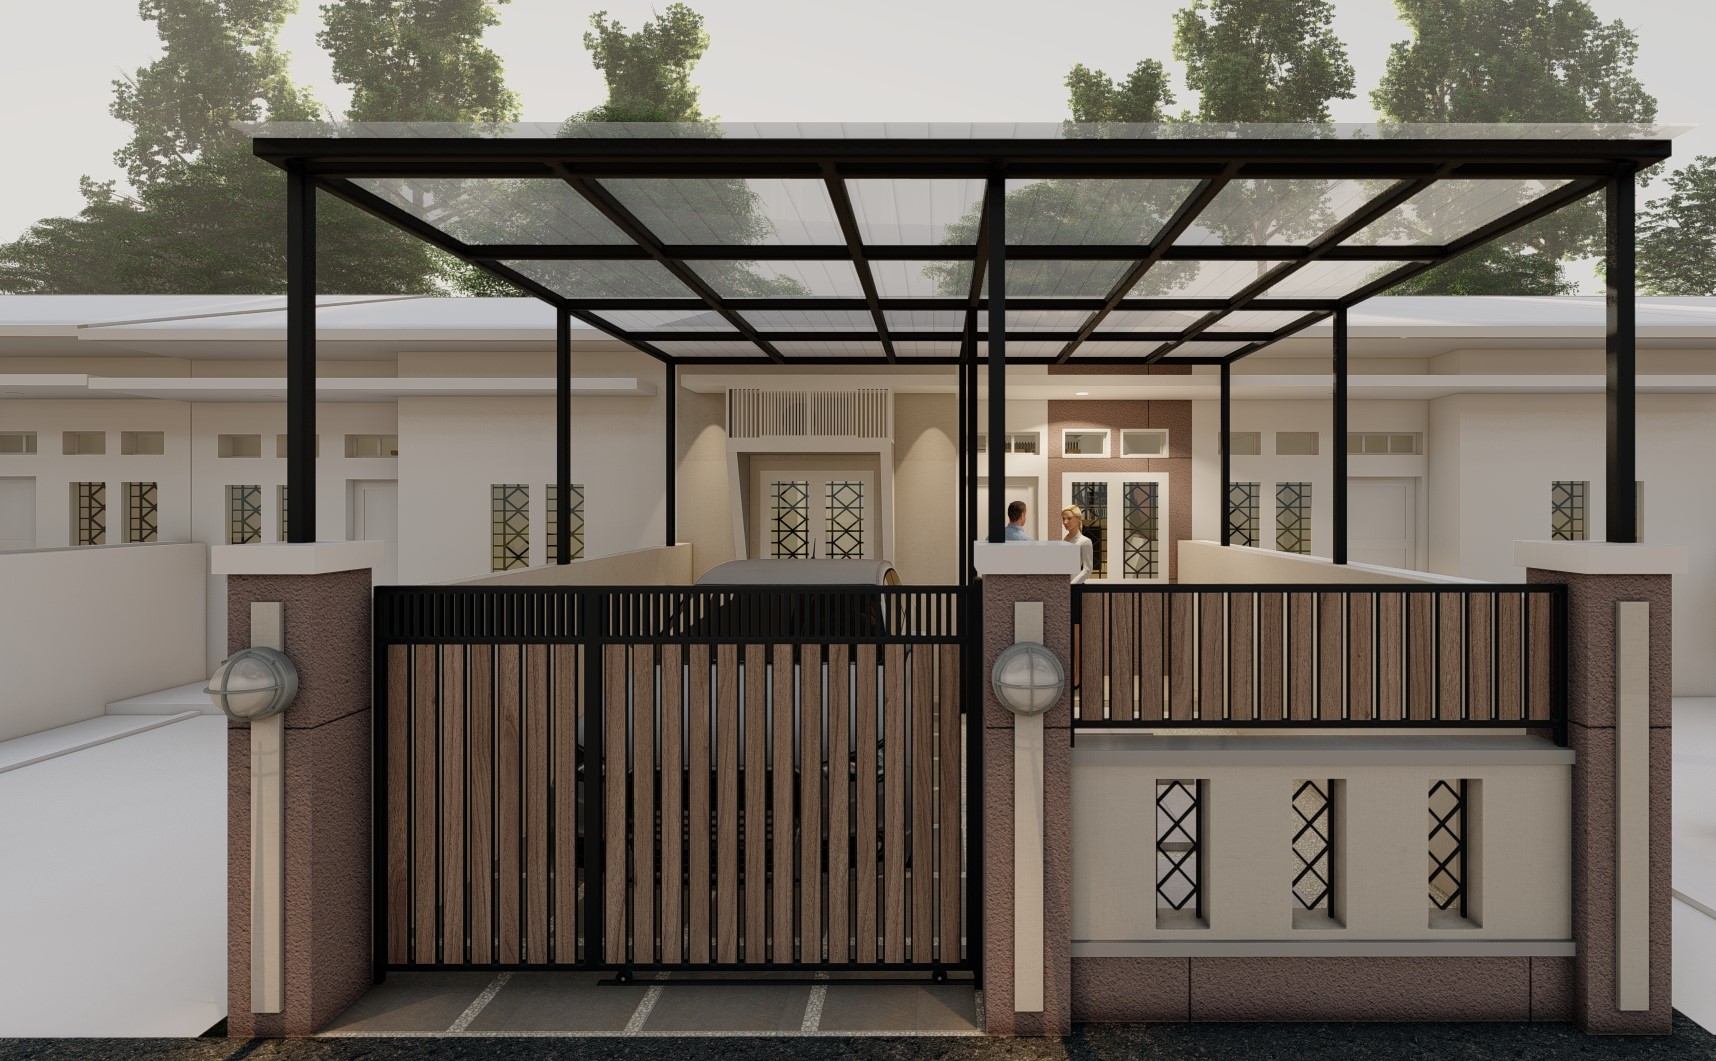 Jasa Desain Rumah Minimalis Ukuran 6x8